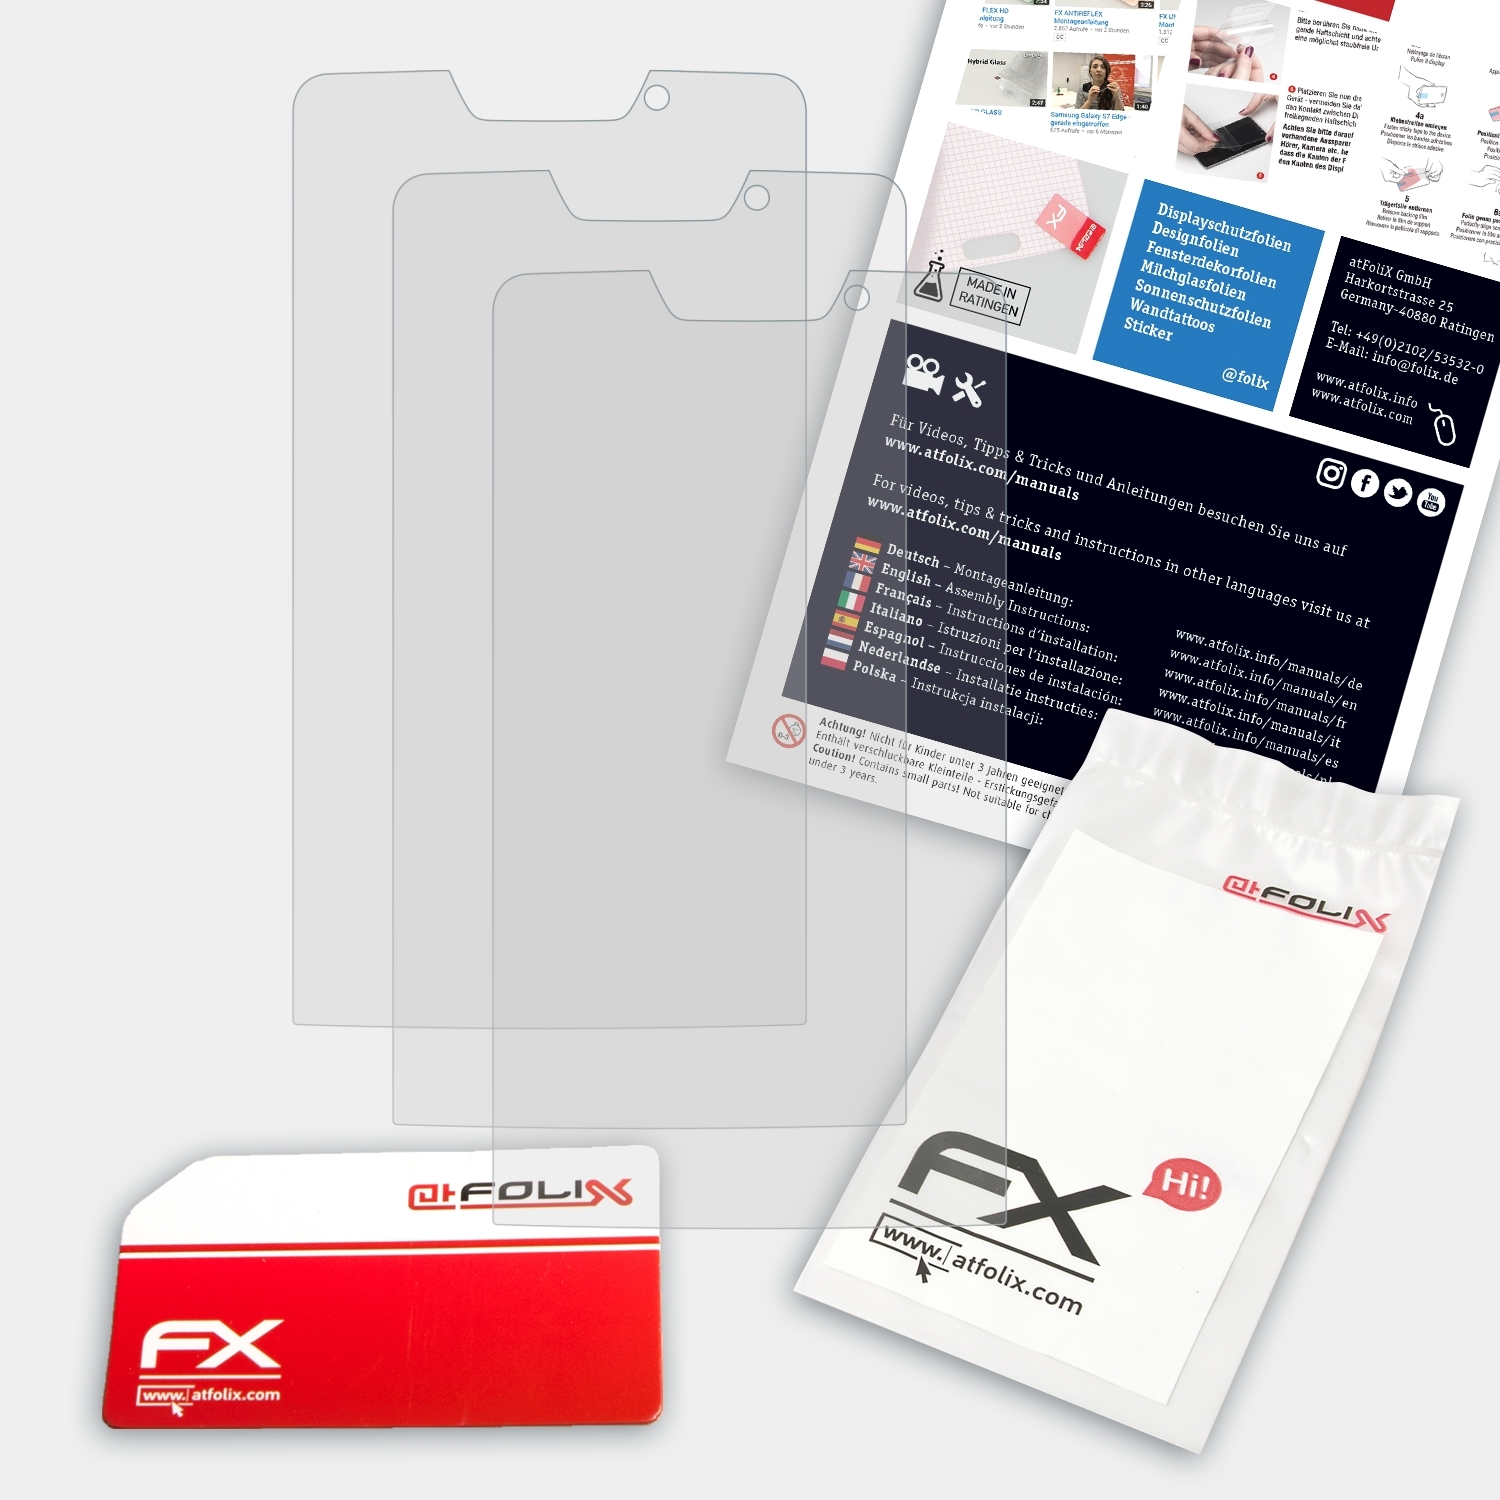 (S1)) FX-Antireflex Emporia Smart ATFOLIX 3x Displayschutz(für